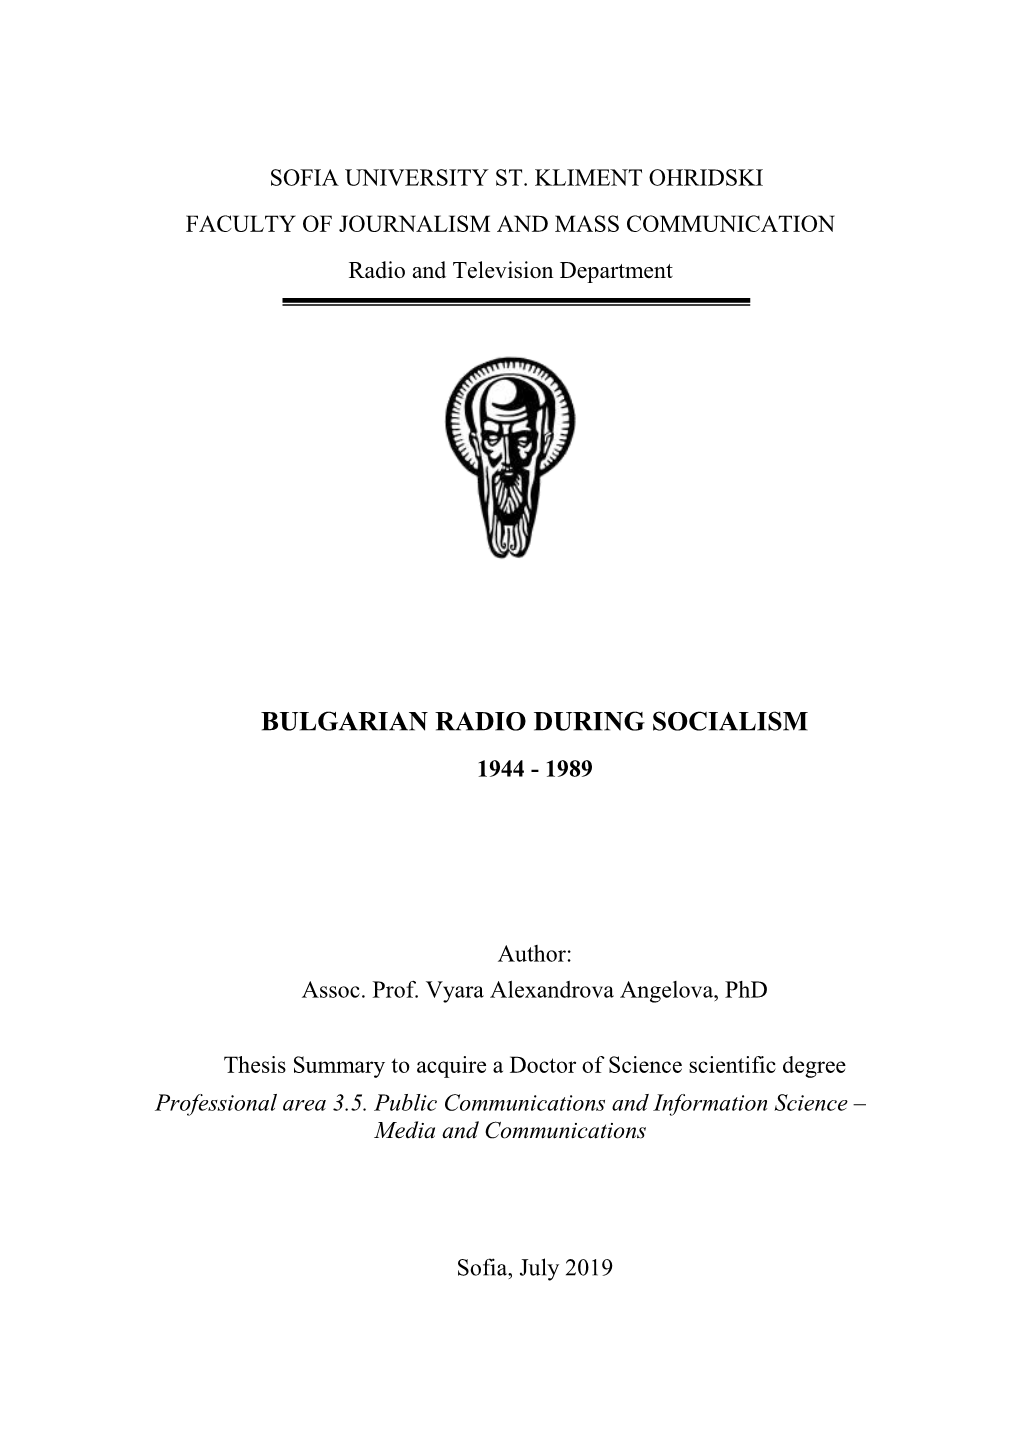 Bulgarian Radio During Socialism 1944 - 1989